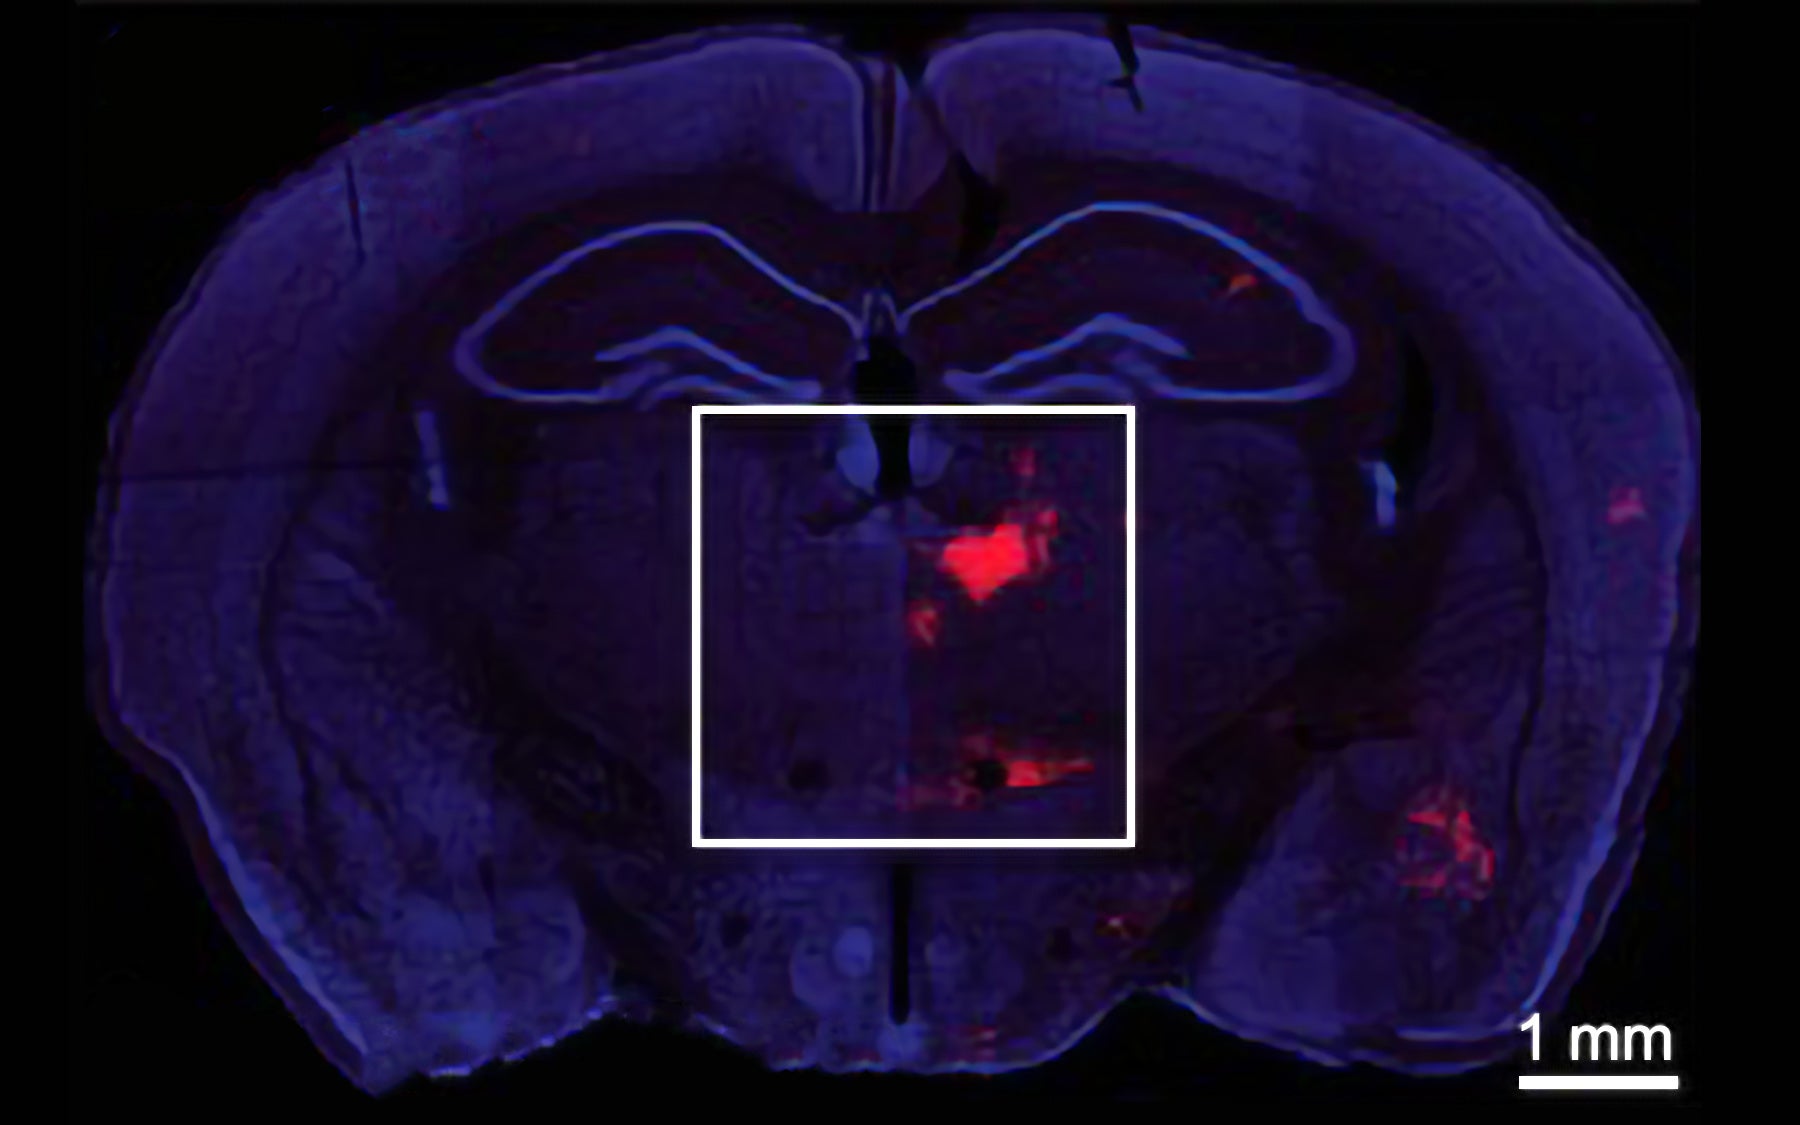 Mouse brain coronal section Bo Li